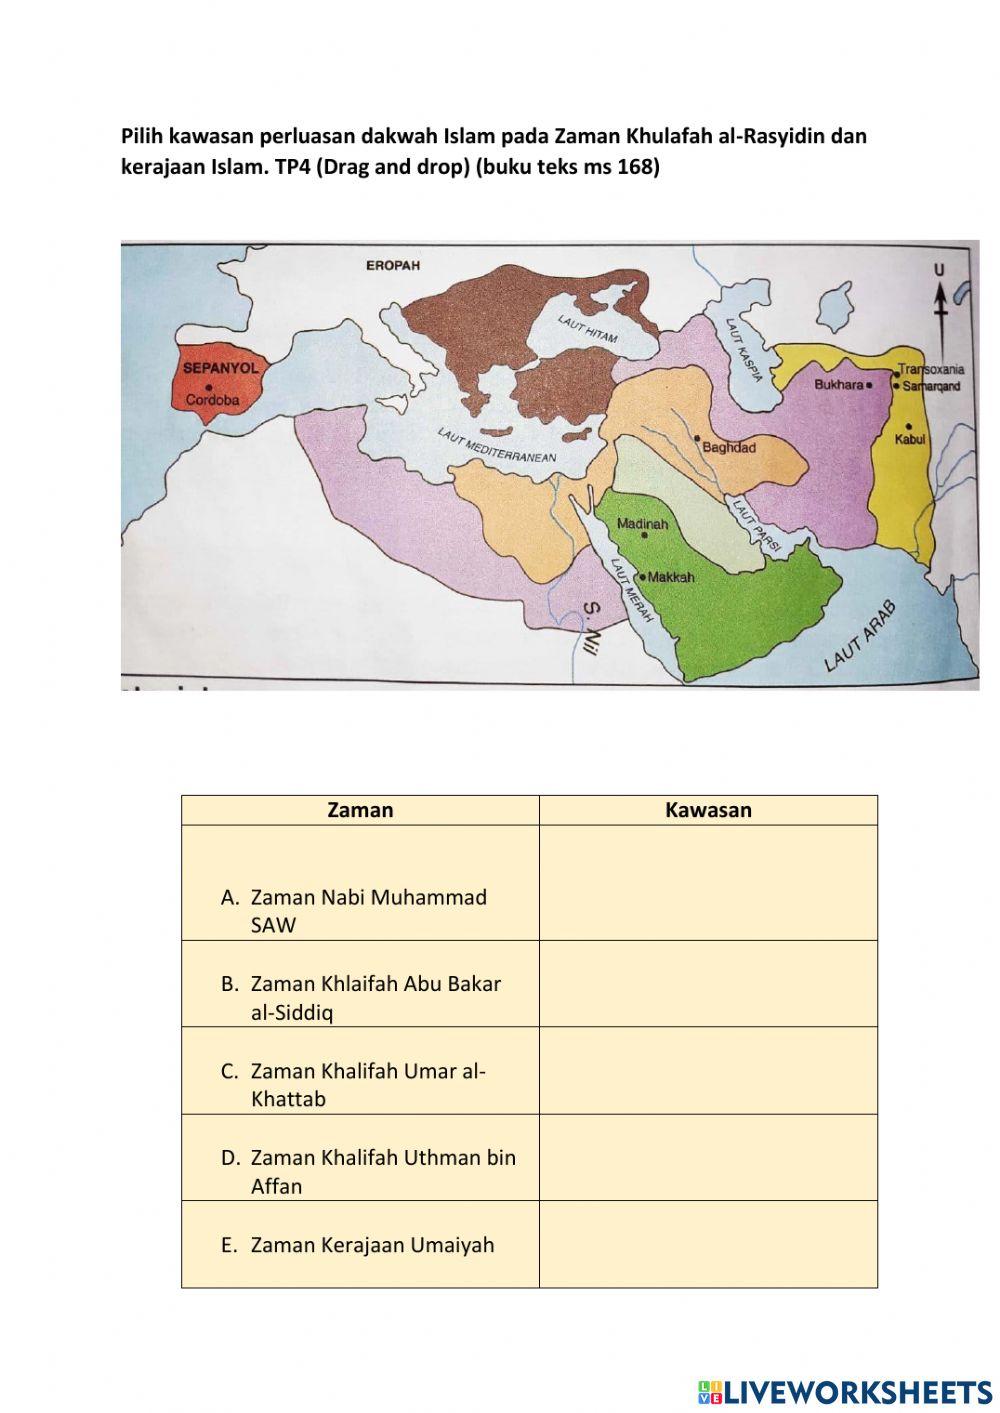 Penyebaran islam pada zaman Khulafah al-Rasyidin dan zaman kerajaan islam